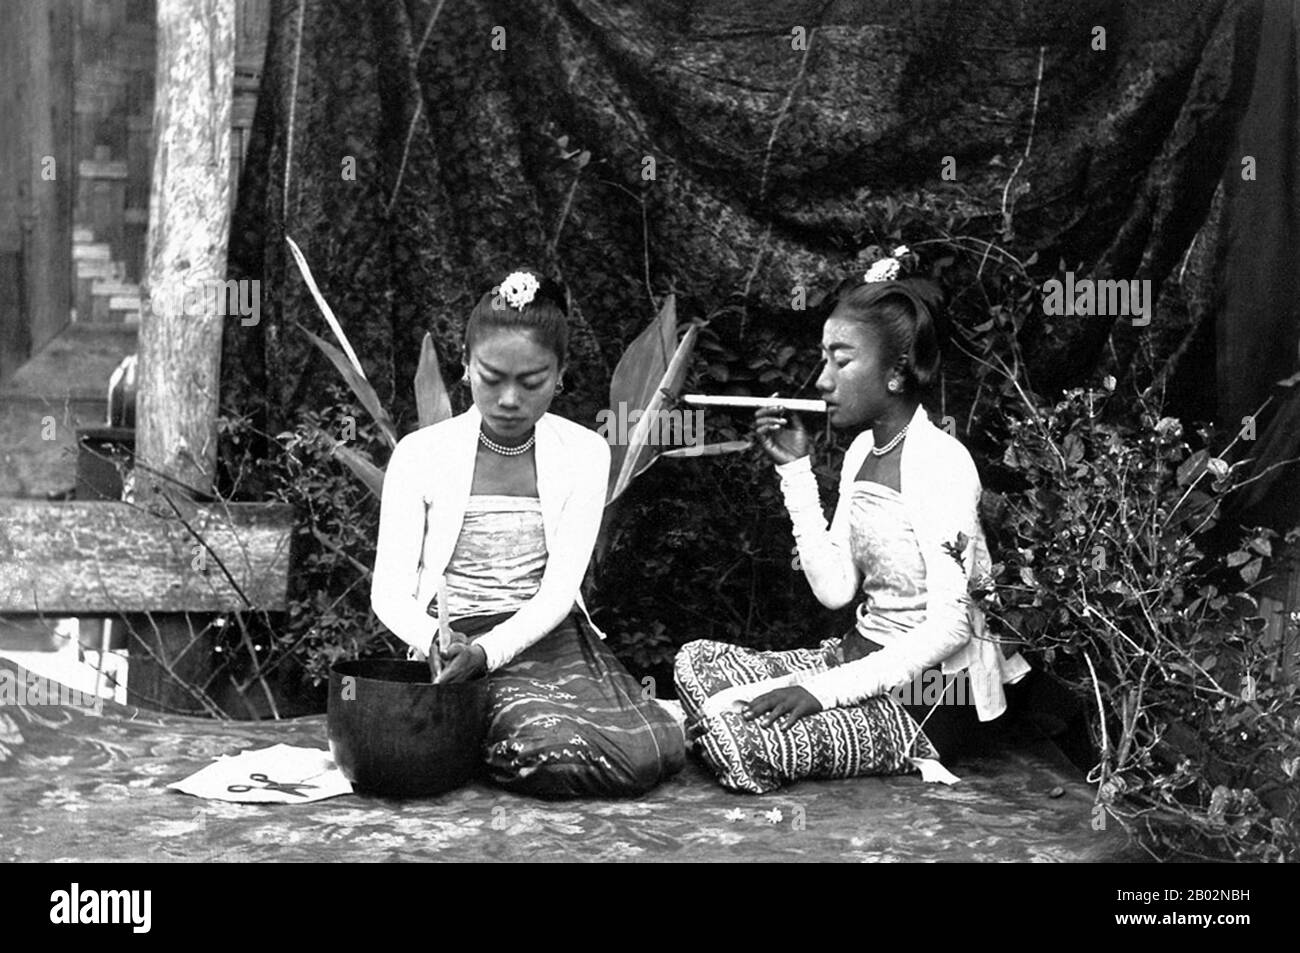 Die britische Eroberung Birmas begann im Jahr 1824 als Reaktion auf einen birmanischen Versuch, in Indien einzudringen. Bis zum Jahr 1886 und nach zwei weiteren Kriegen hatte Großbritannien das gesamte Land dem britischen Raj einverleibt. Um den Handel anzukurbeln und Veränderungen zu erleichtern, brachten die Briten Inder und Chinesen ein, die die Birmanesen in städtischen Gebieten schnell verdrängten. Bis heute haben Rangun und Mandalay große ethnische Indianerpopulationen. Es wurden Eisenbahnen und Schulen sowie eine große Anzahl von Gefängnissen, darunter das berüchtigte Insein-Gefängnis, damals wie heute für politische Gefangene genutzt. Burmesische Ressentiments waren stark und wagten sich Stockfoto